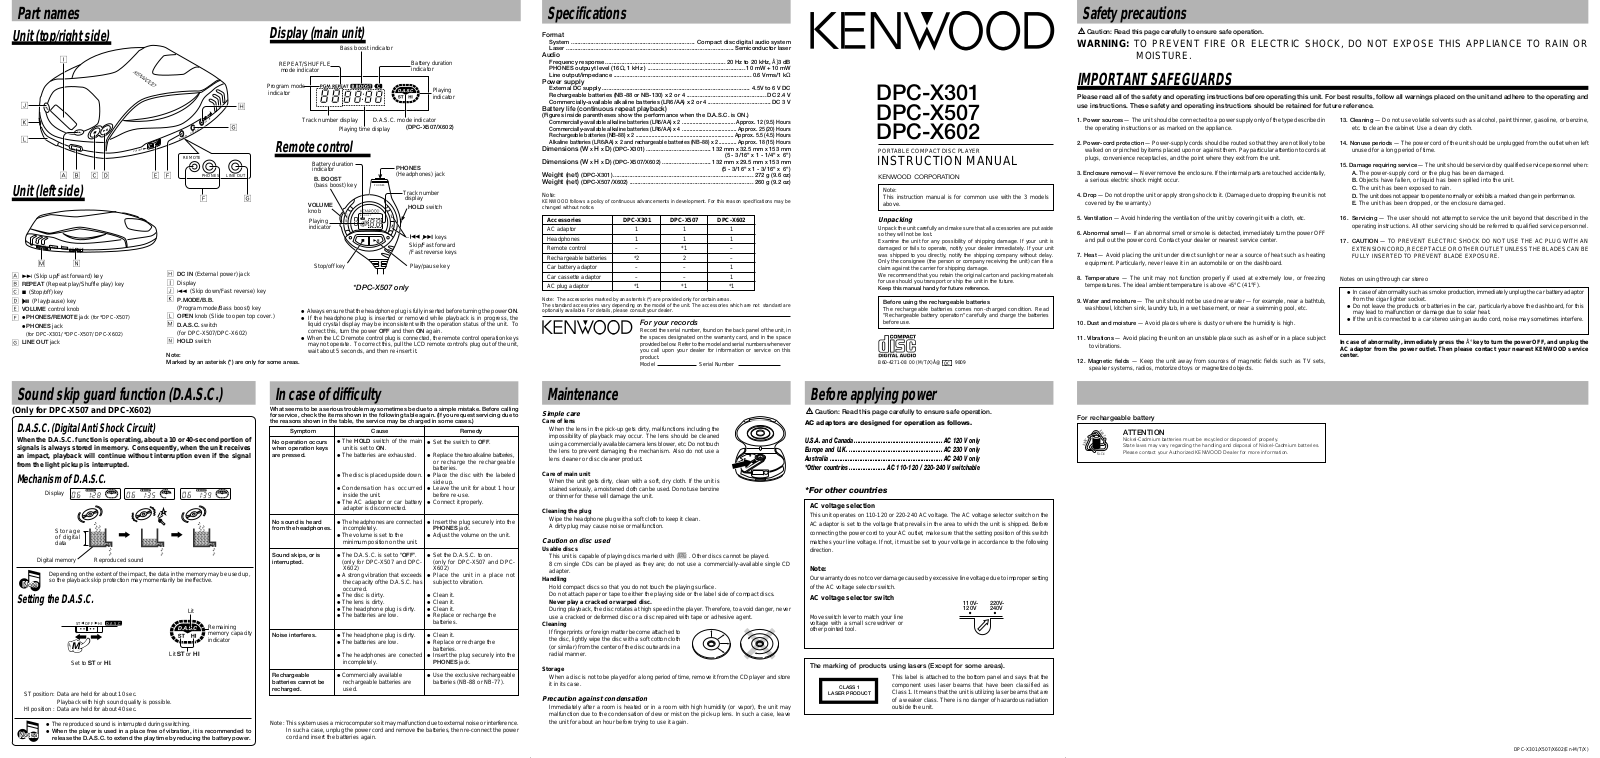 Kenwood DPC-X602, DPC-X301, DPC-X507 User Manual